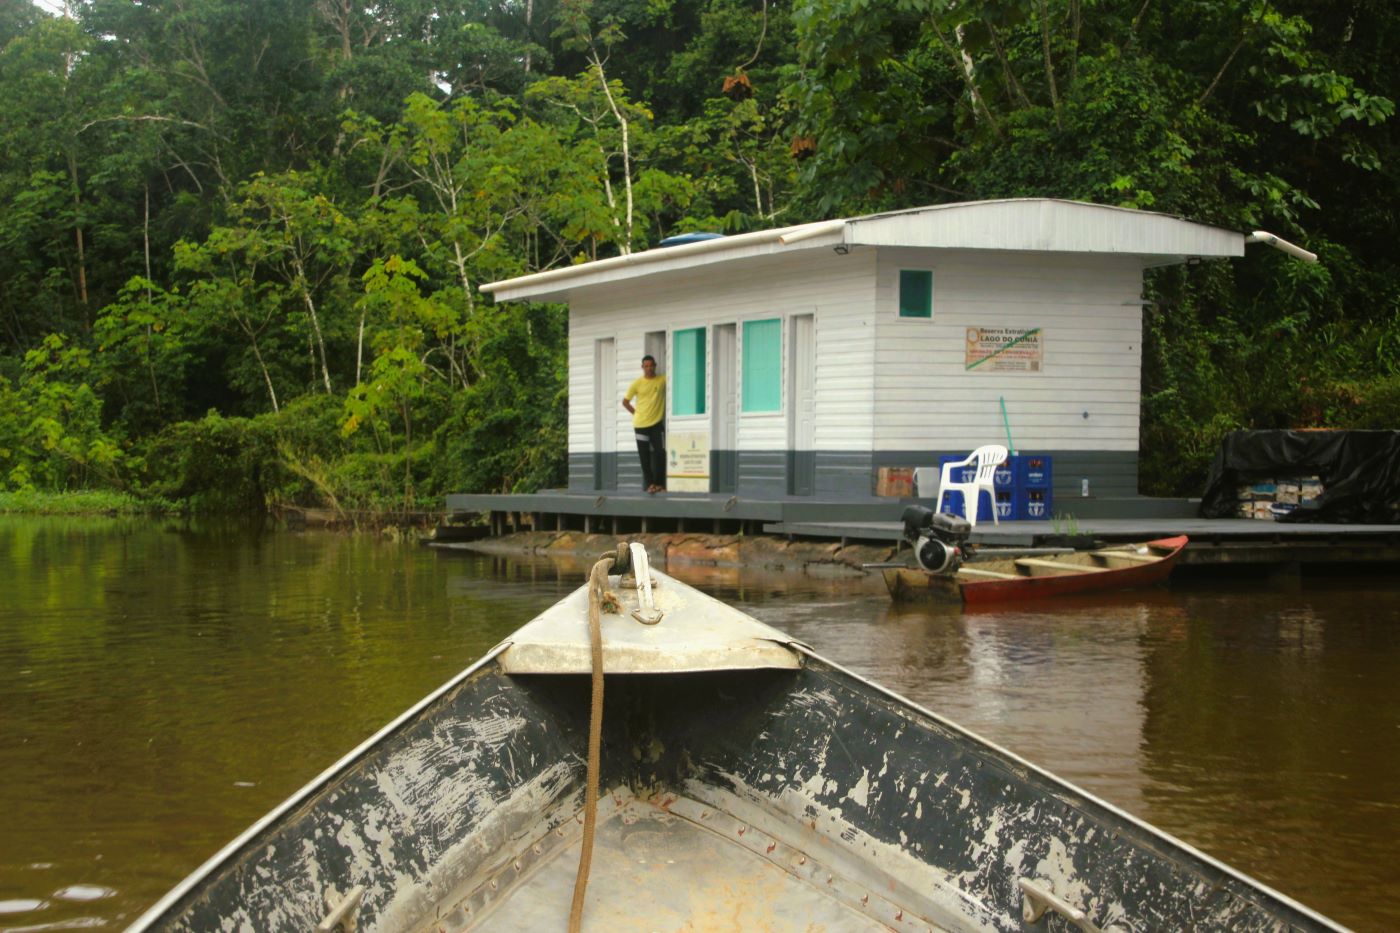 Imagem mostra entrada de Resex, com barco no rio e construção de madeira na margem